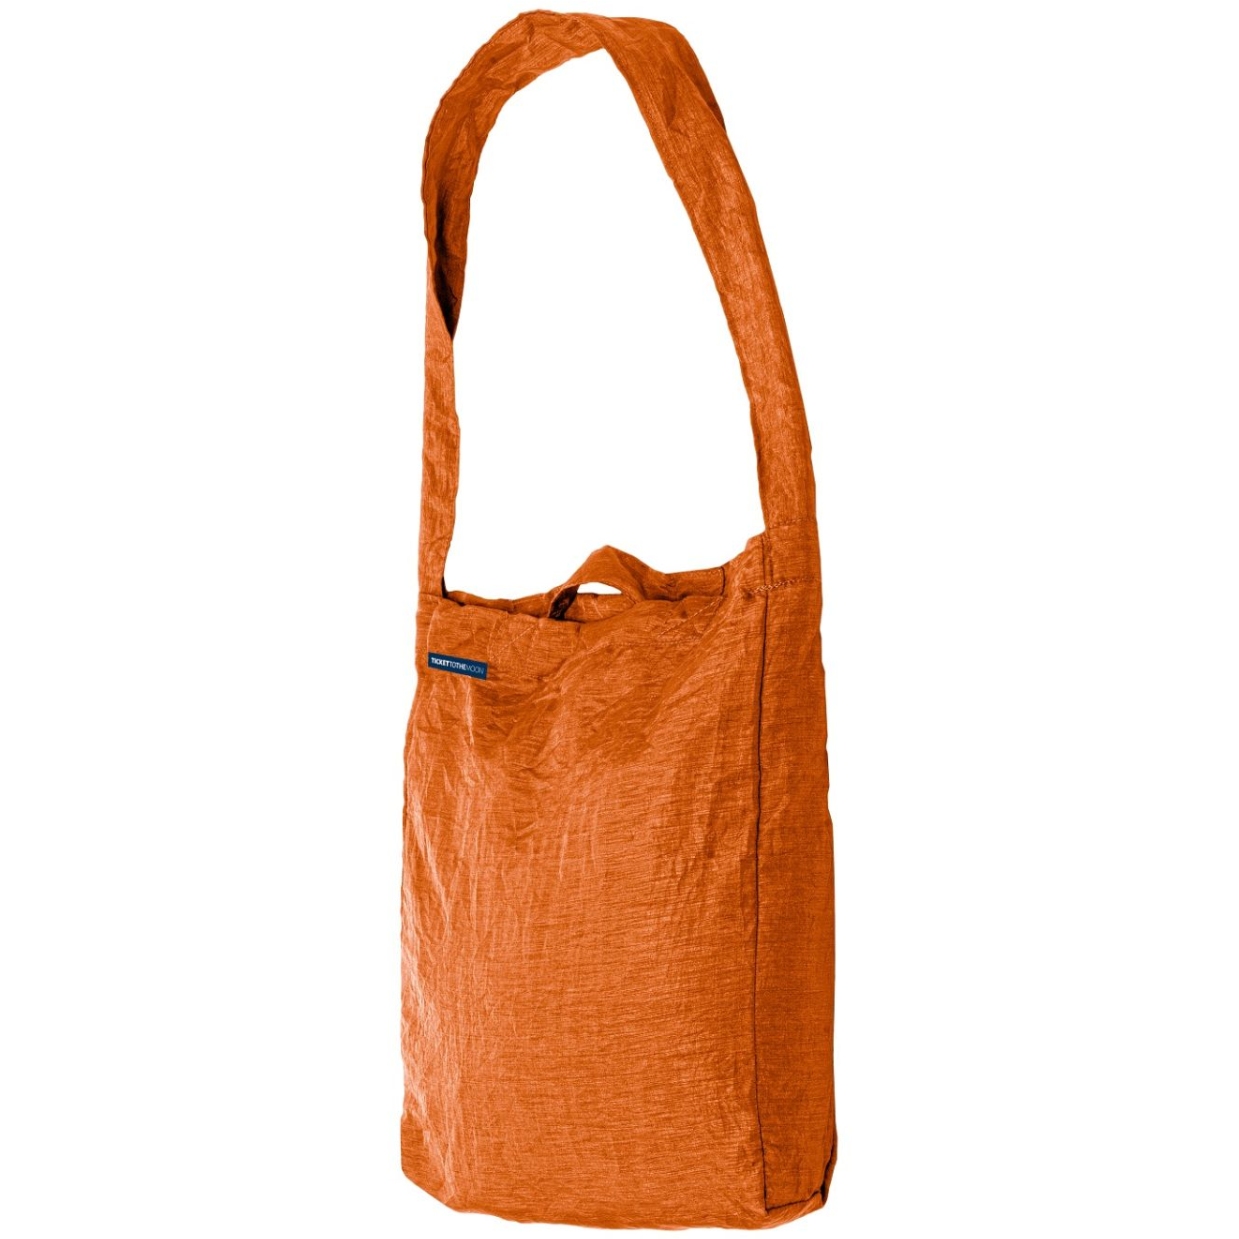 Produktbild von Ticket To The Moon Eco Bag Large Premium Einkaufstasche 30L - Terracotta Orange